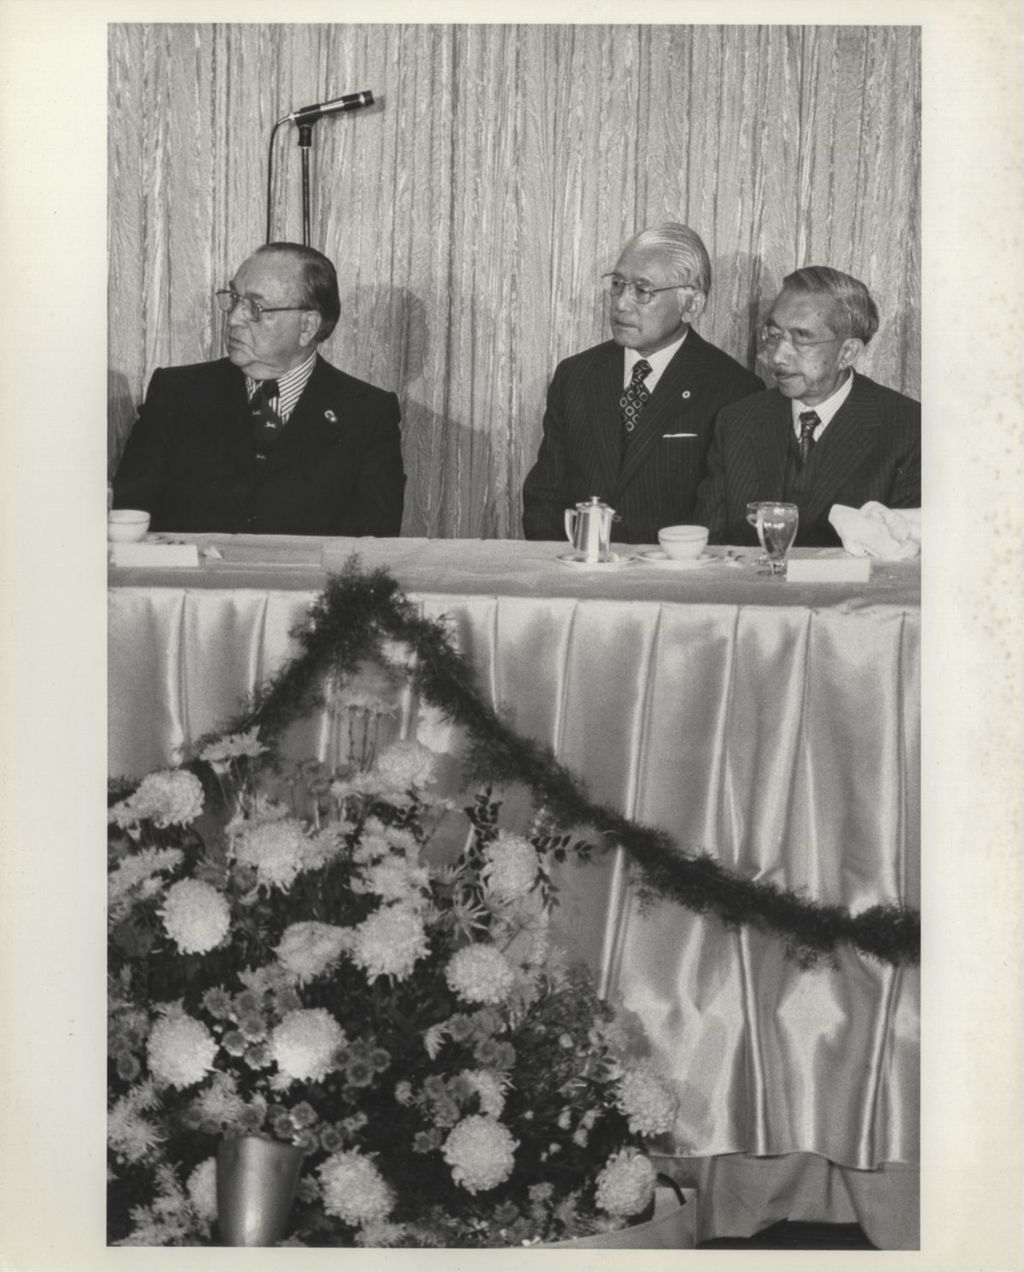 Miniature of Richard J. Daley and Emperor Hirohito at a banquet